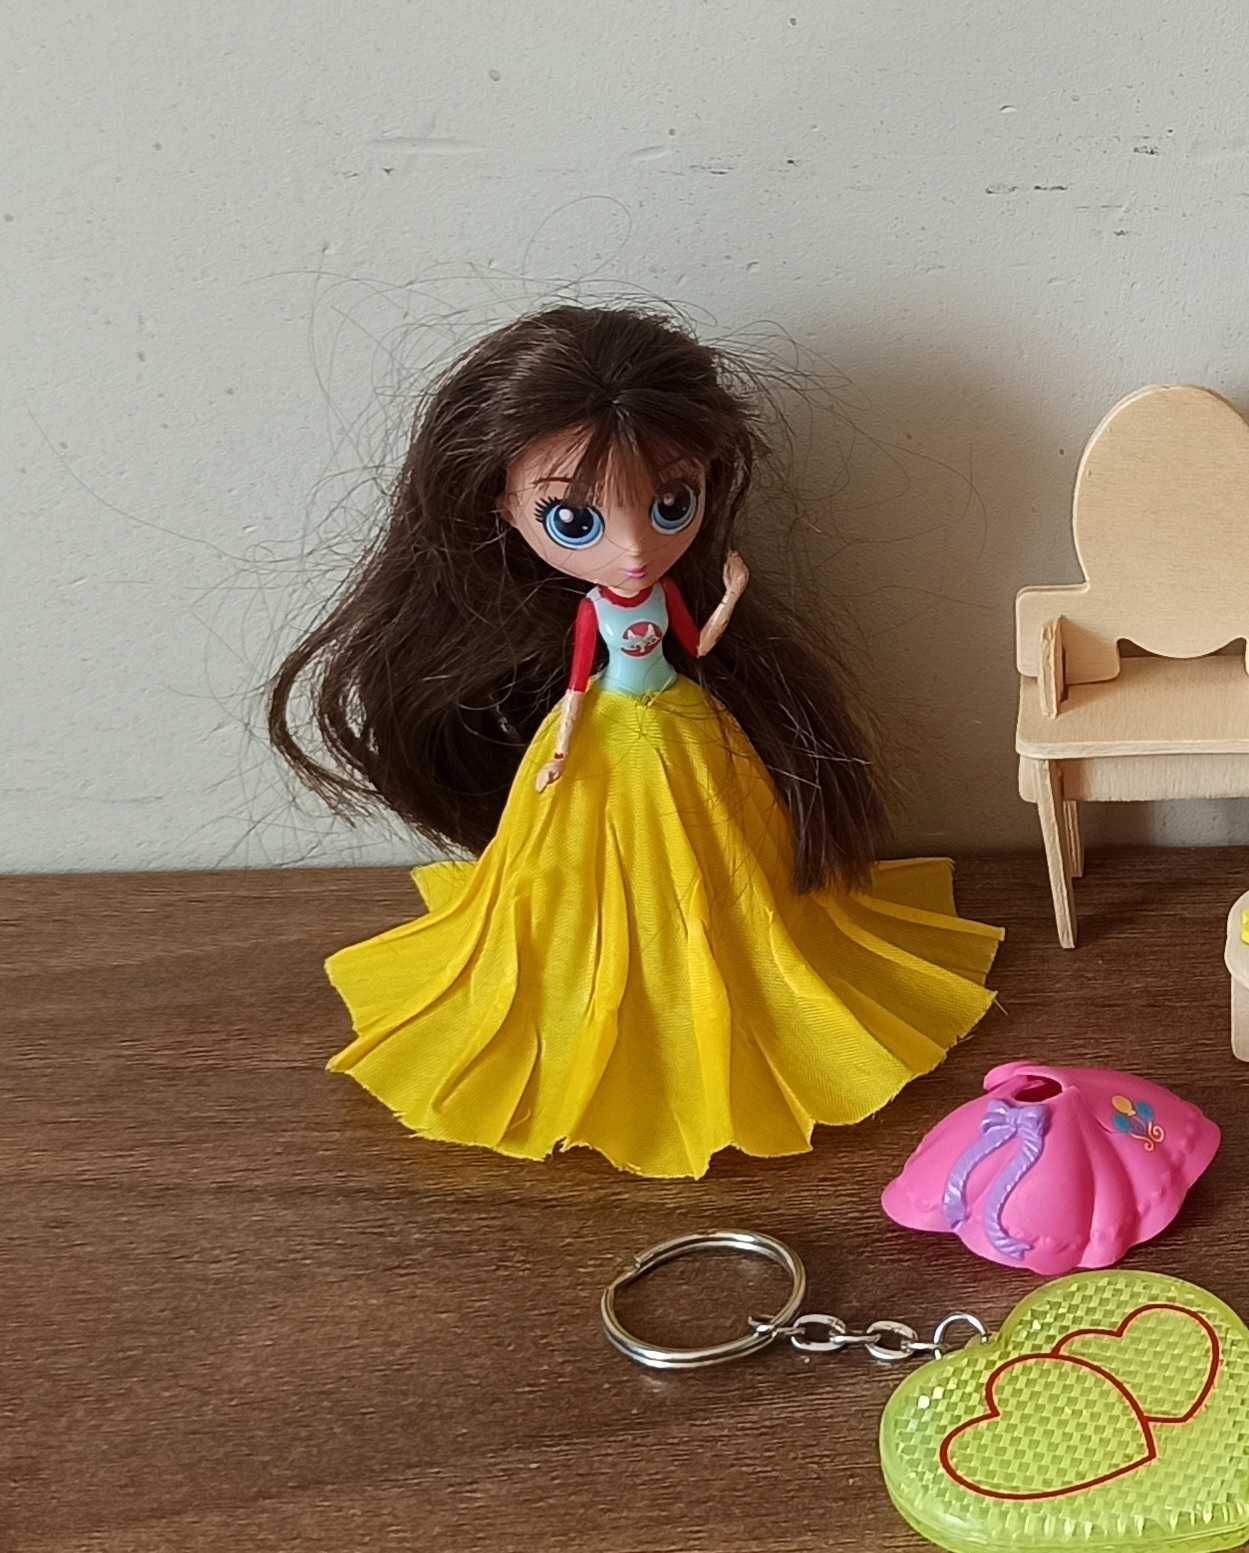 zabawki dla dziewczynki zestaw lalka + mebelki + inne